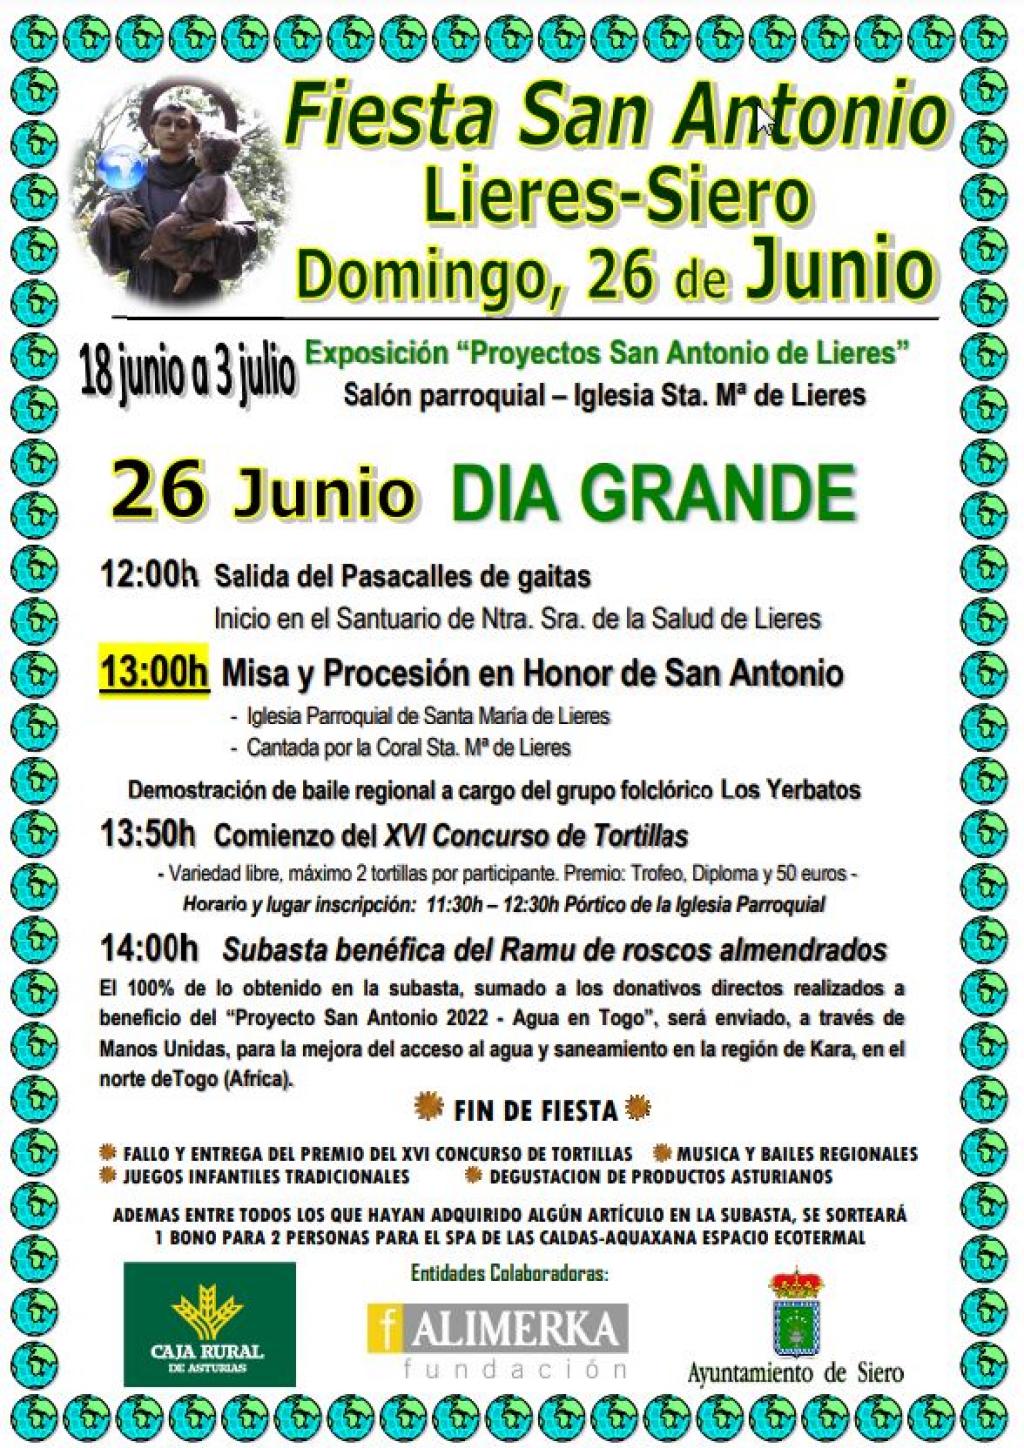 El Tapin - Lieres celebra San Antonio el 26 de junio con la misa y la subasta solidaria del ramu